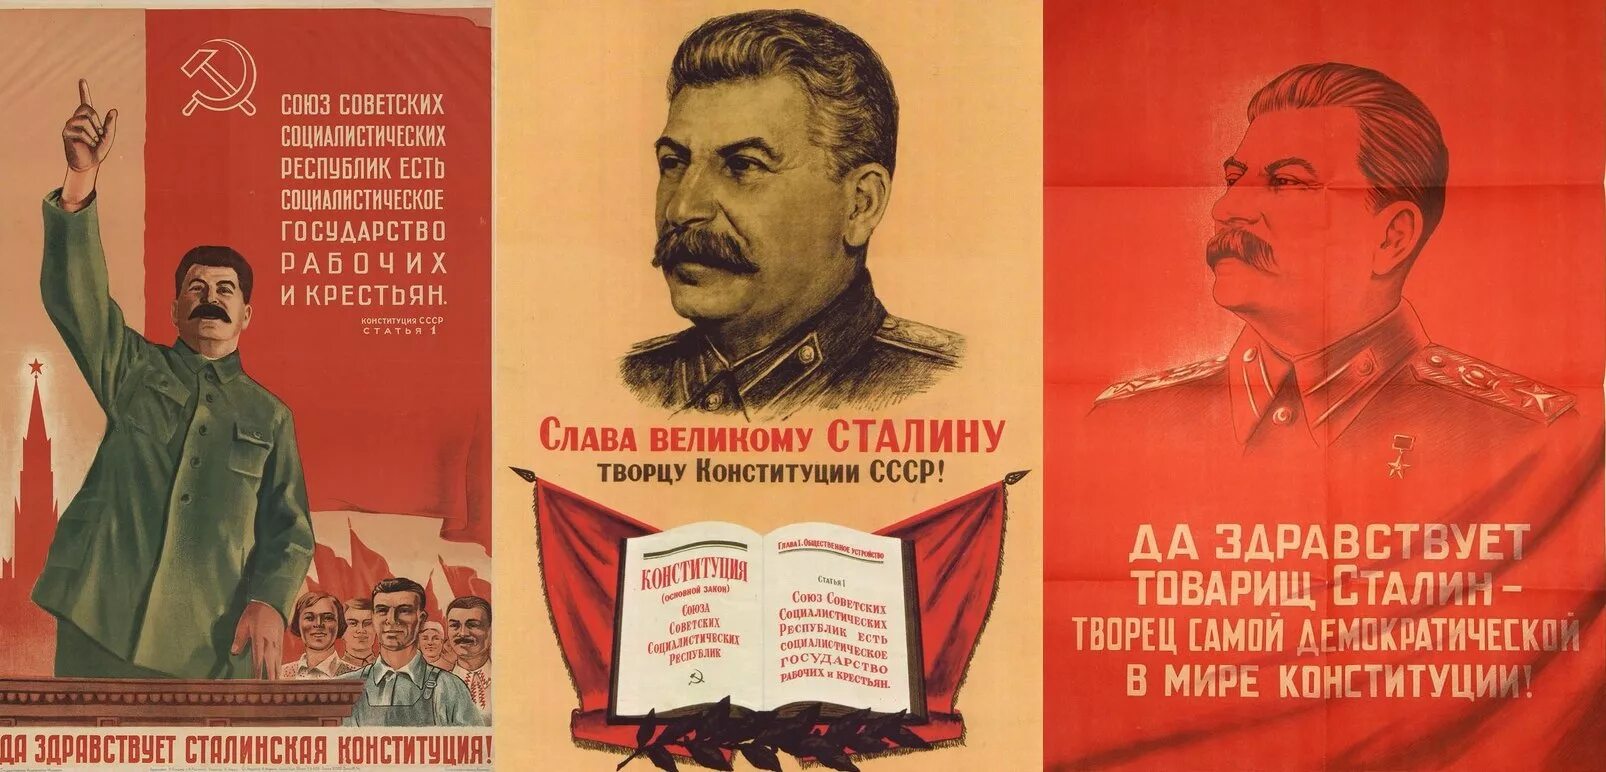 Конституция СССР 1936 года сталинская. Сталин и Конституция 1936. Сталинская Конституция 1936 года плакат. Сталин о Конституции 1936 года. Сталинской называлась конституция